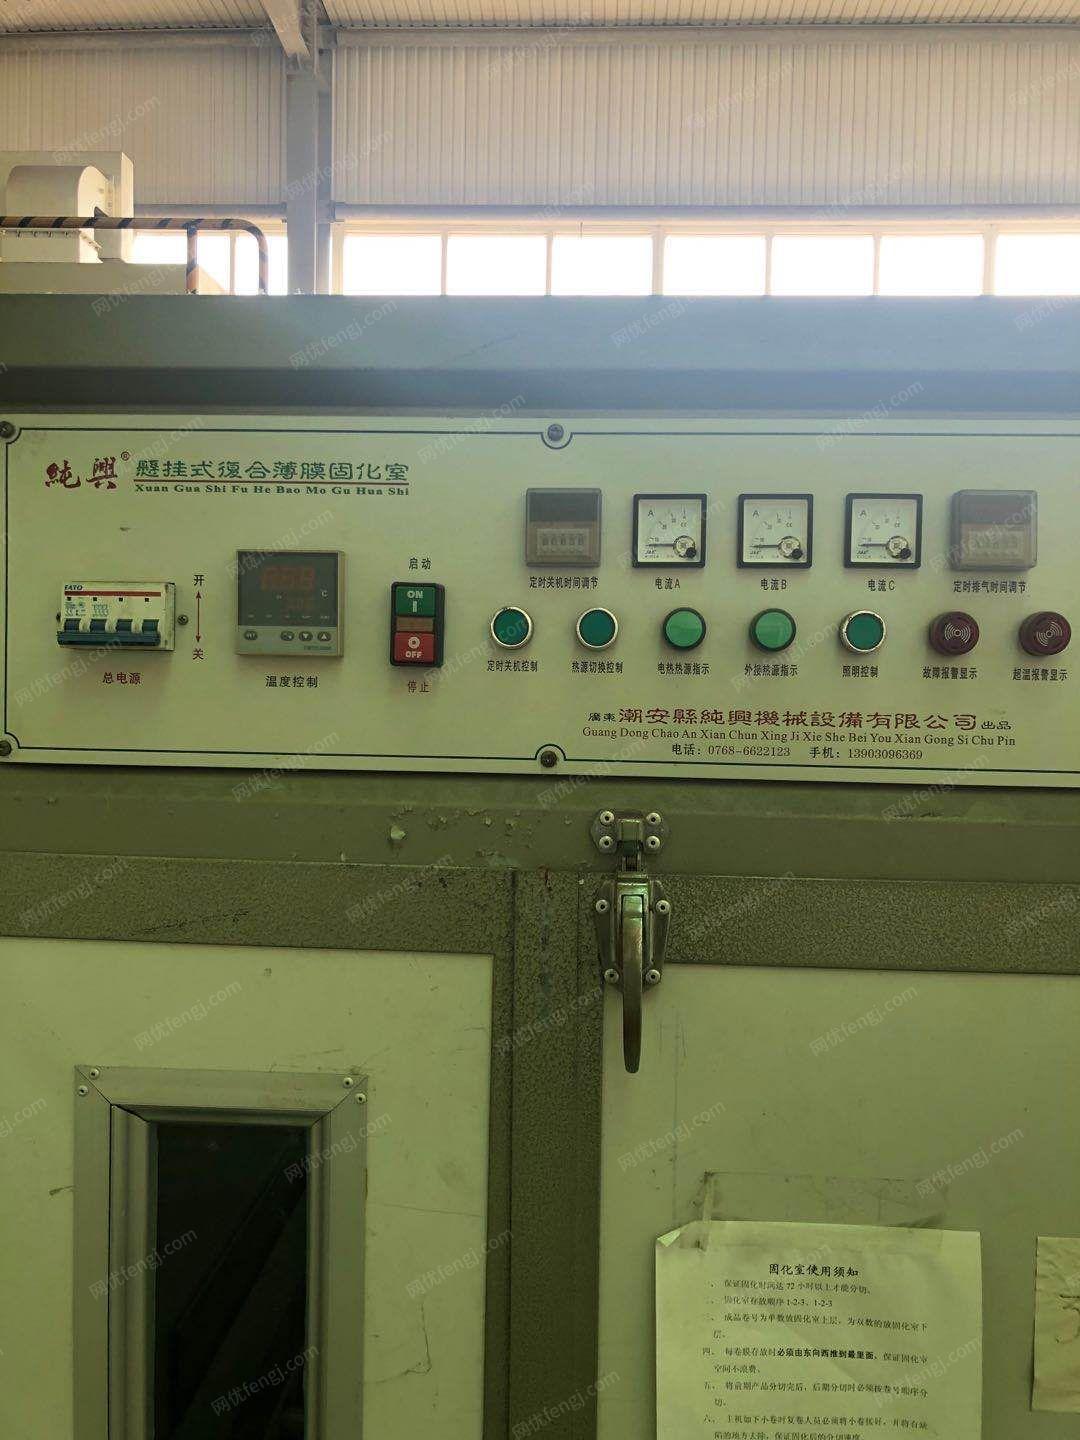 塑料厂处理1.3米涂布生产线1条（涂布机，烘干机，收卷机等），cx－105薄膜固化室3台